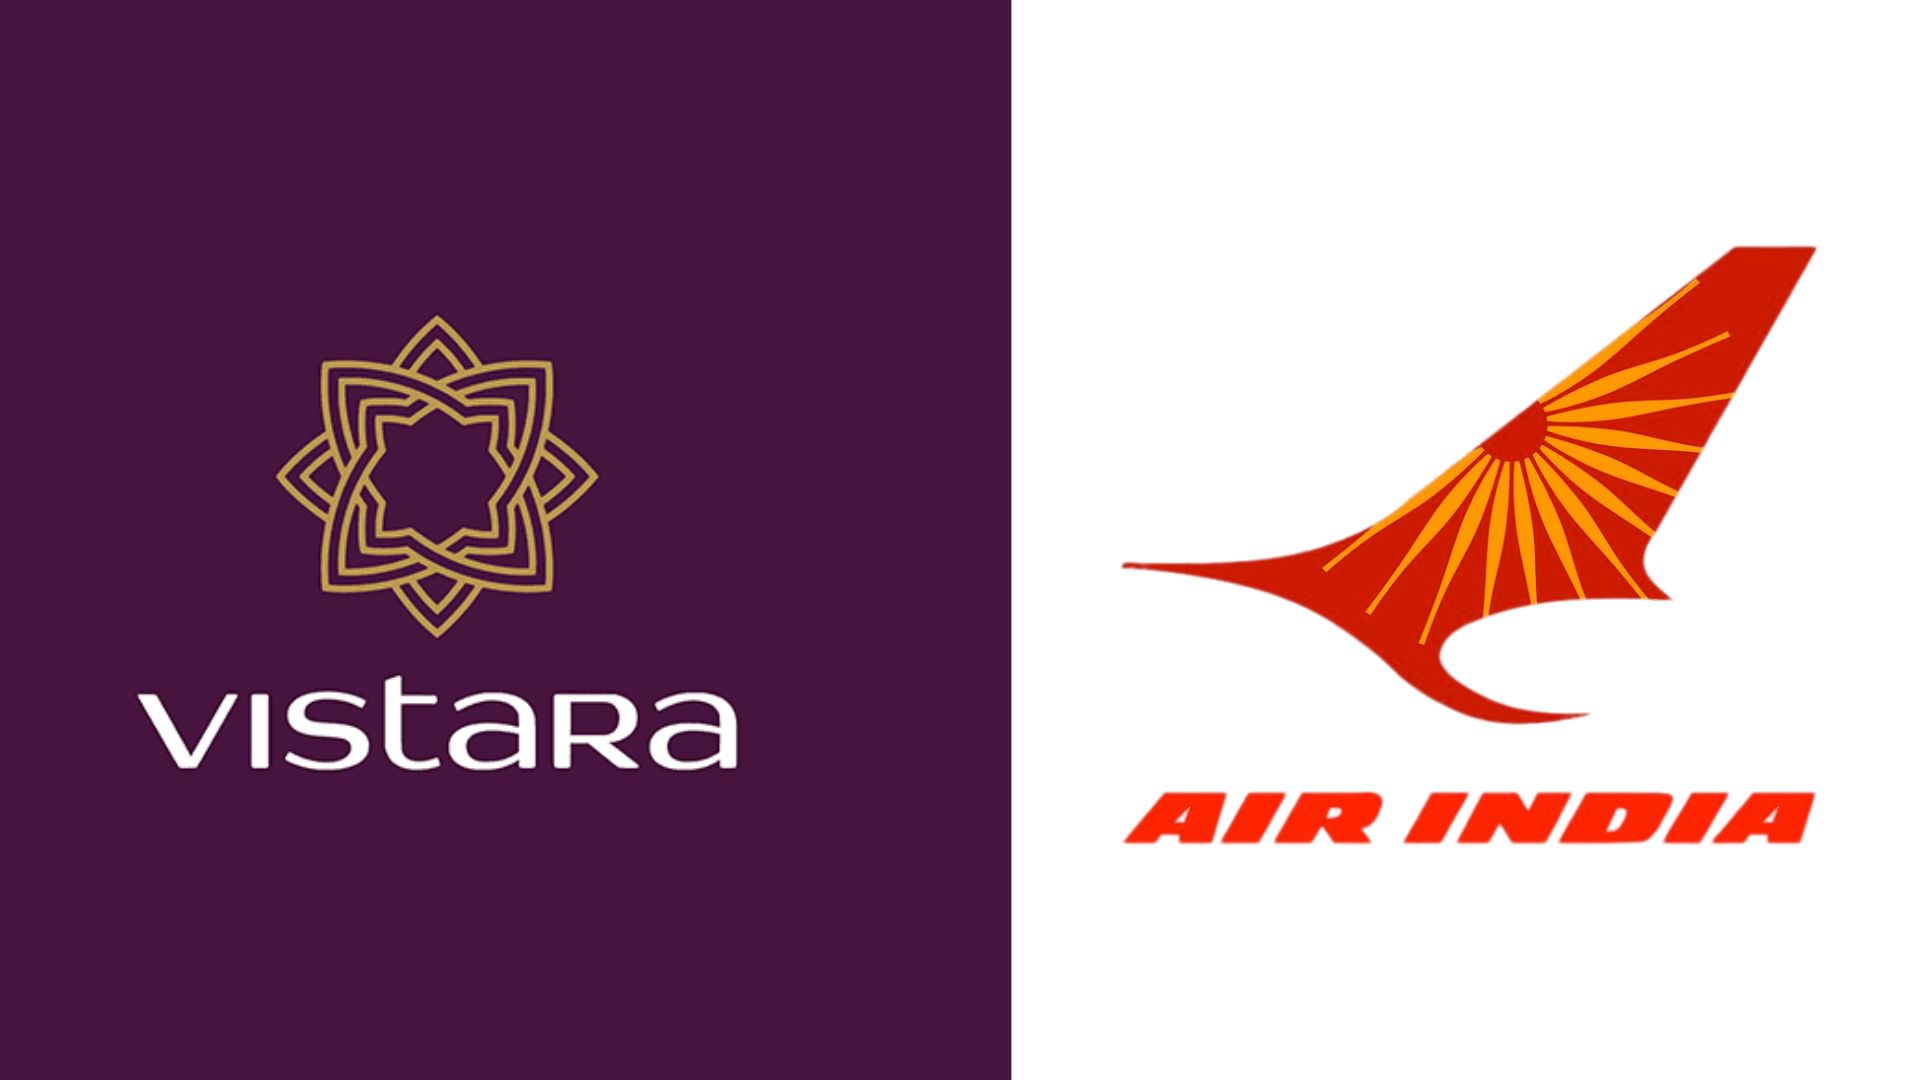 Air India to discontinue Vistara after merger